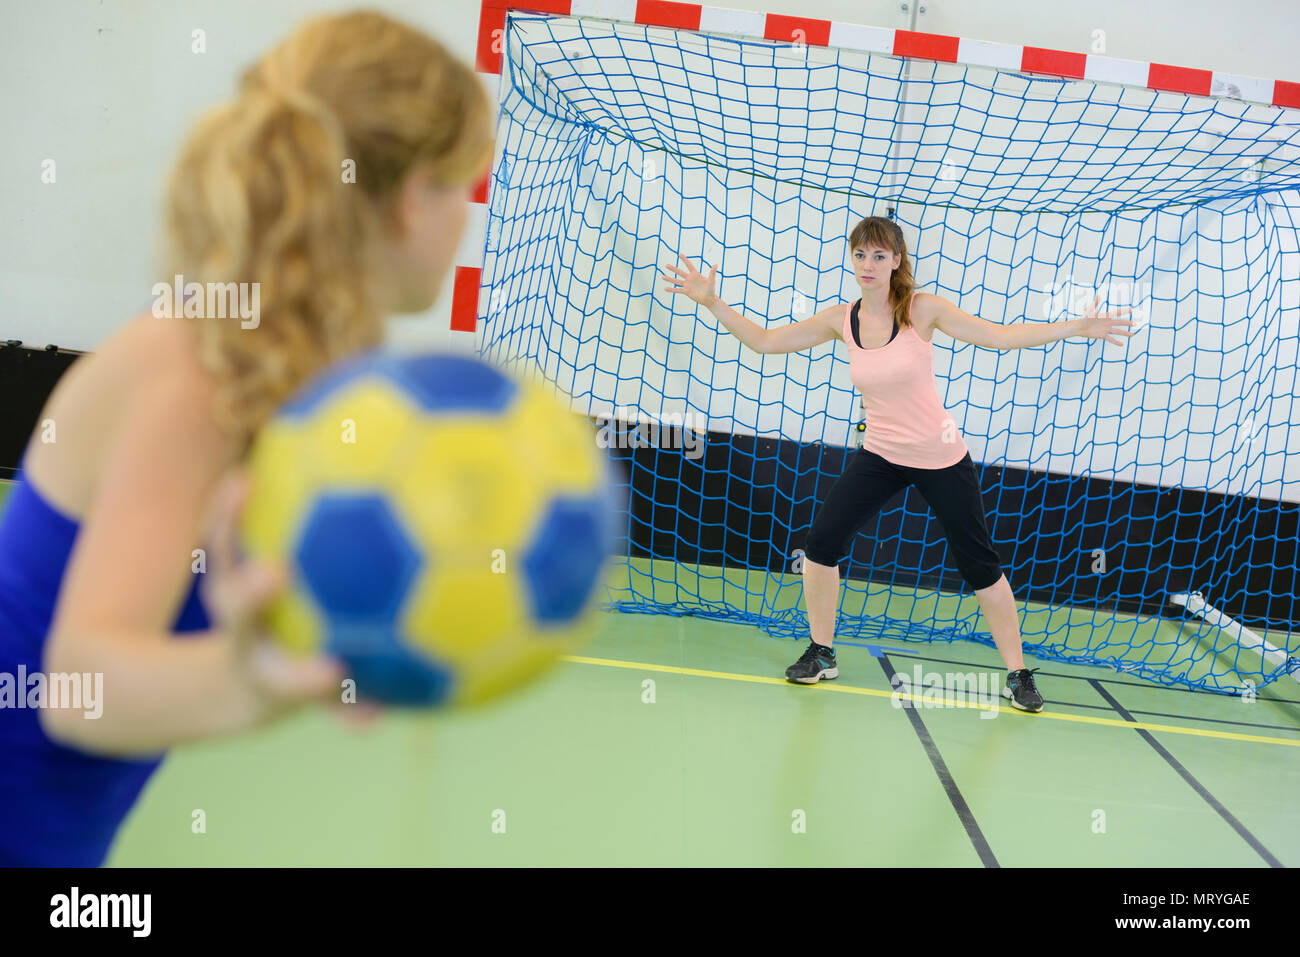 Woman playing handball, aiming for goal Stock Photo